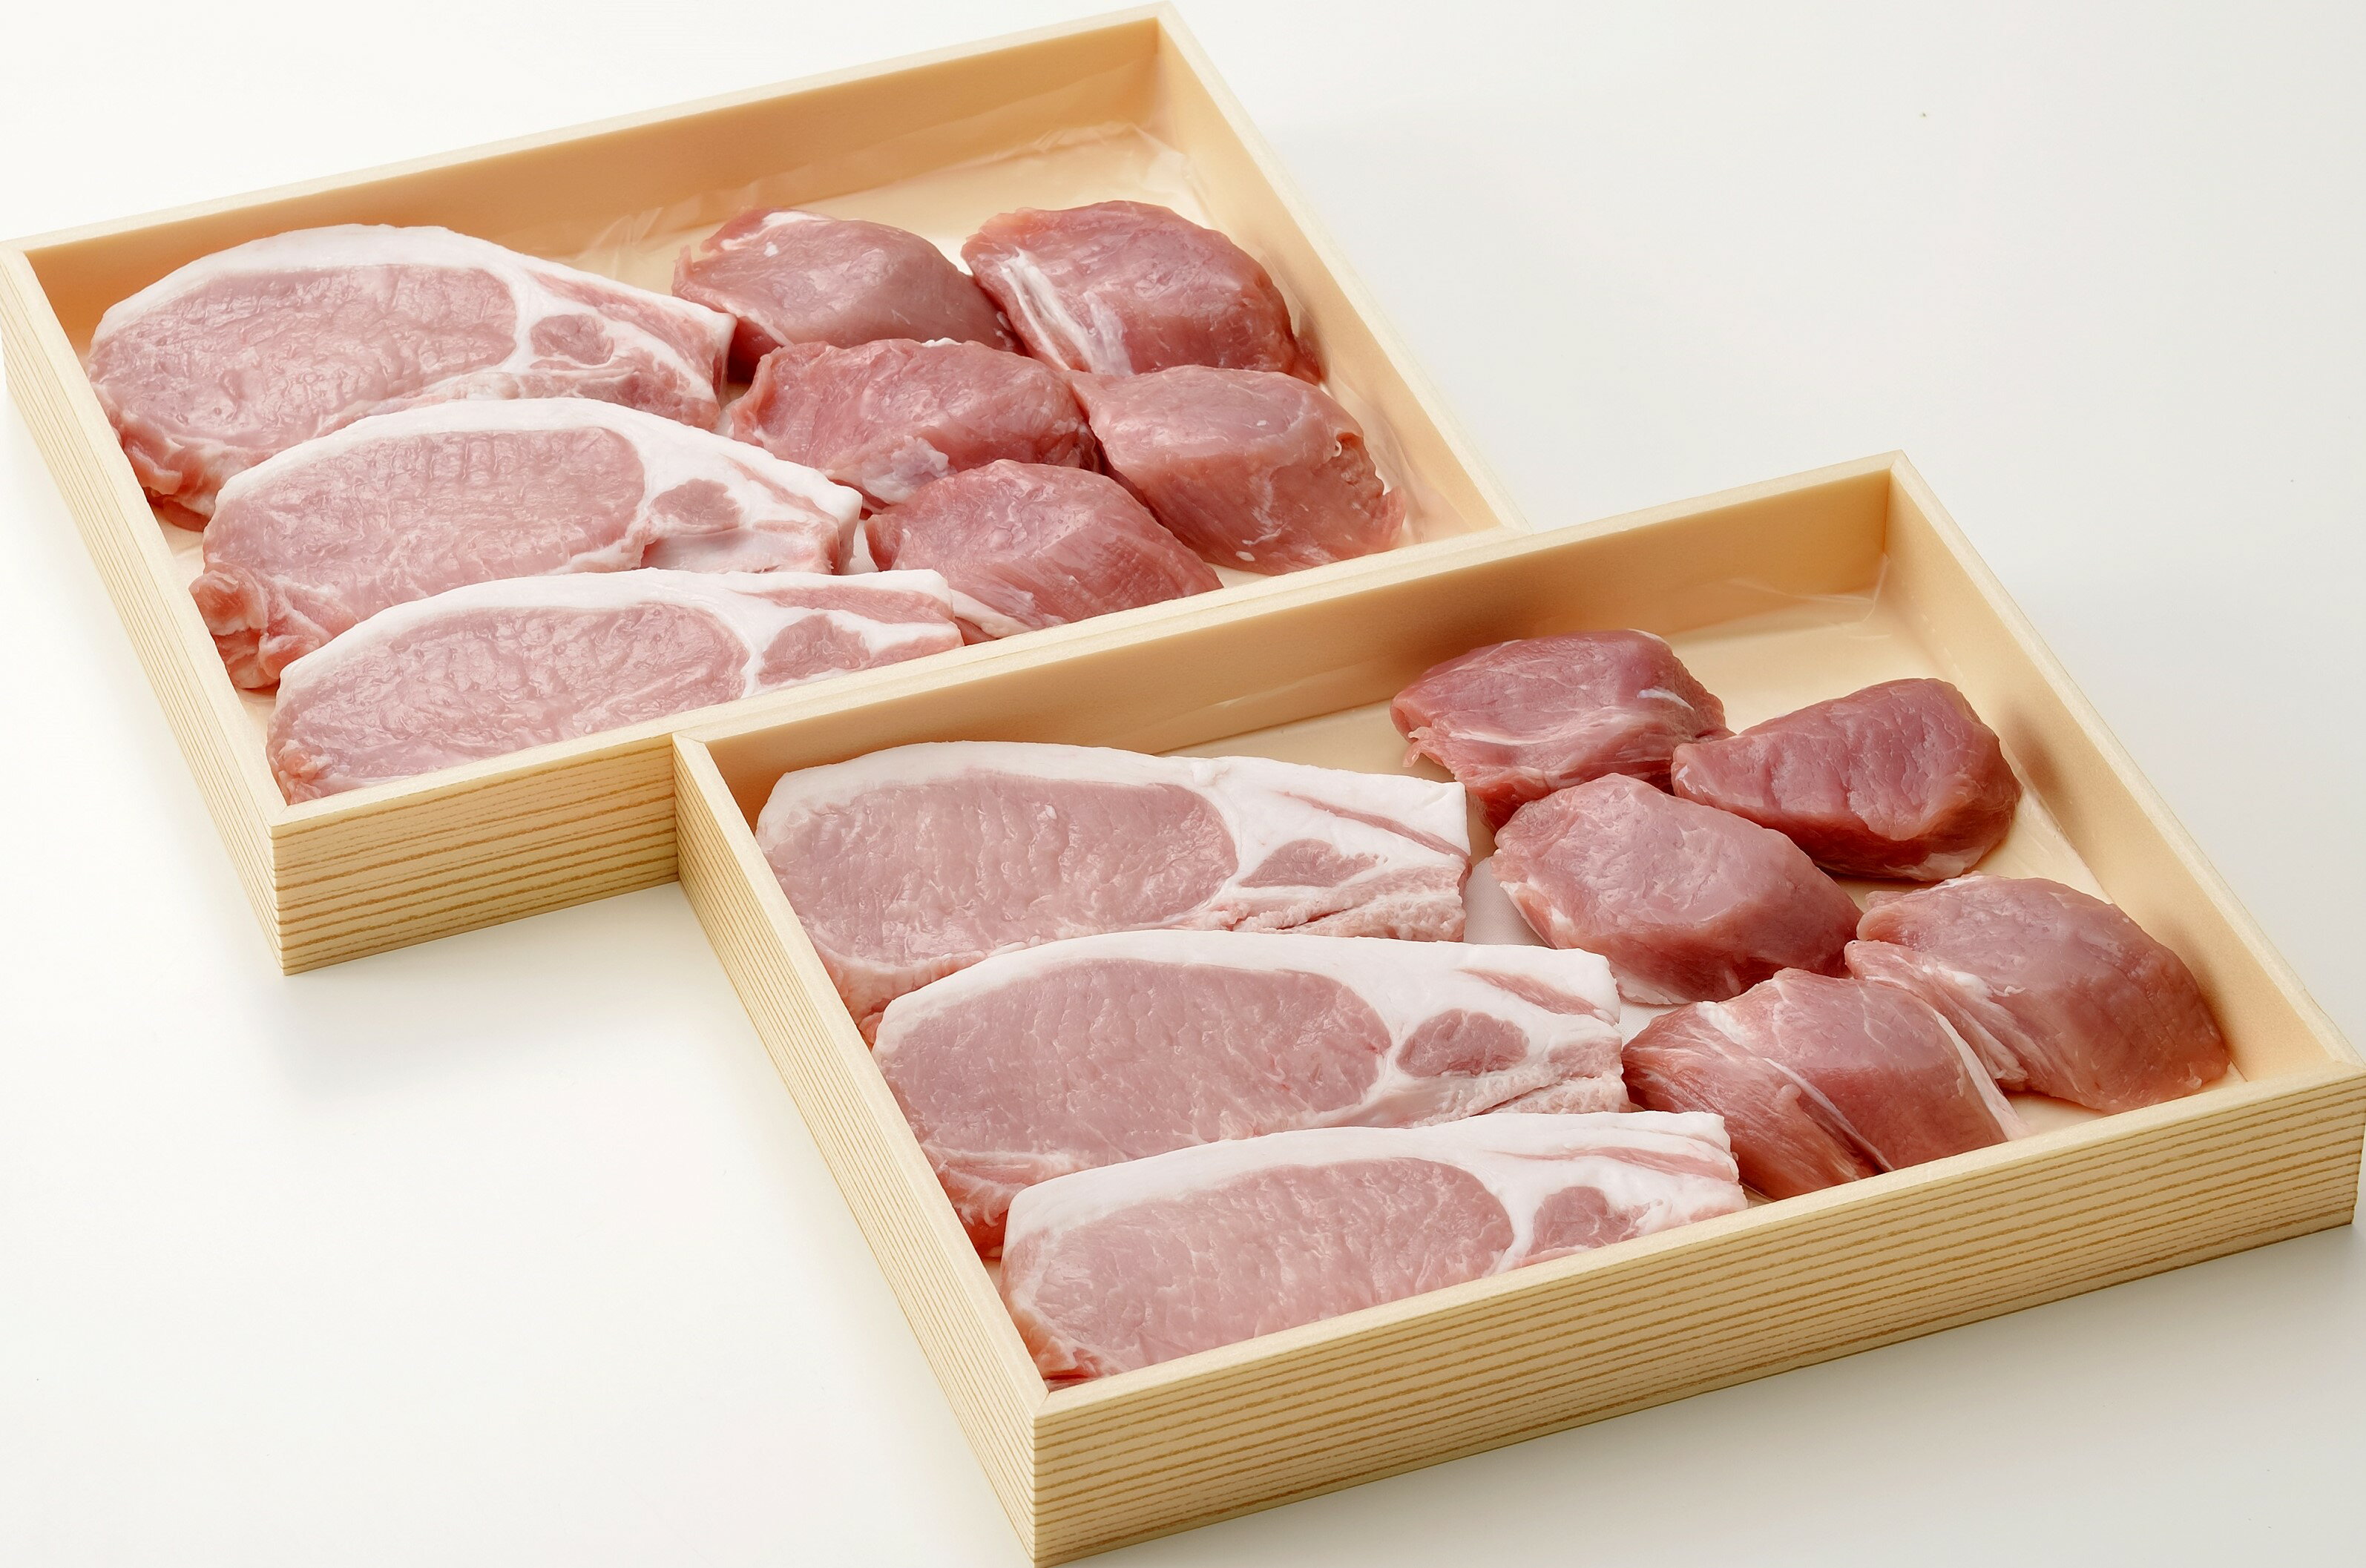 商品情報名称いばらき地養豚とんかつ用お肉セット産地茨城県内容量豚ロース肉720g豚ヒレ肉400g発送形態遠方への発送も考慮しまして冷凍便となります。保存温度-18℃以下で保存してください。賞味期限は約1ヶ月間です。解凍方法冷蔵庫で時間をかけて解凍してください。常温での解凍は急激な温度変化により、お肉の旨みが逃げてしまいます。品質・風味が損なわれますので、ご注意ください。銘柄豚「いばらき地養豚」とんかつ用お肉セット！※ロース切身120g×6枚＆ヒレ切身400g☆ ジュージュー音を立てて焼いて♪♪とんかつ、とんてき、ステーキetc…※全ての商品画像はイメージです。 ★肉厚ロース切身とヒレ切身でボリューム満点★ ロース＆ヒレの切身をセットにしました♪とんかつ、とんてきなどガッツリどうぞ！ ちょうど良い脂身のロース肉：とんかつに最適です♪ ヘルシーな赤身の豚ヒレ肉：カロリーが気になる方♪ ガッツリなロースにアッサリなヒレ♪ 今日は…かつ丼で決まり！ロース カロリーを気にせずガッツリ食べたい！ヒレ 勝負事にはカツでゲン担ぎ！ こんにちは！店長の田中です(^^)/豚の脂質は心と体の働きを高める効率的なエネルギーの源！お肉が美味しいと脂も美味しい◎ 1